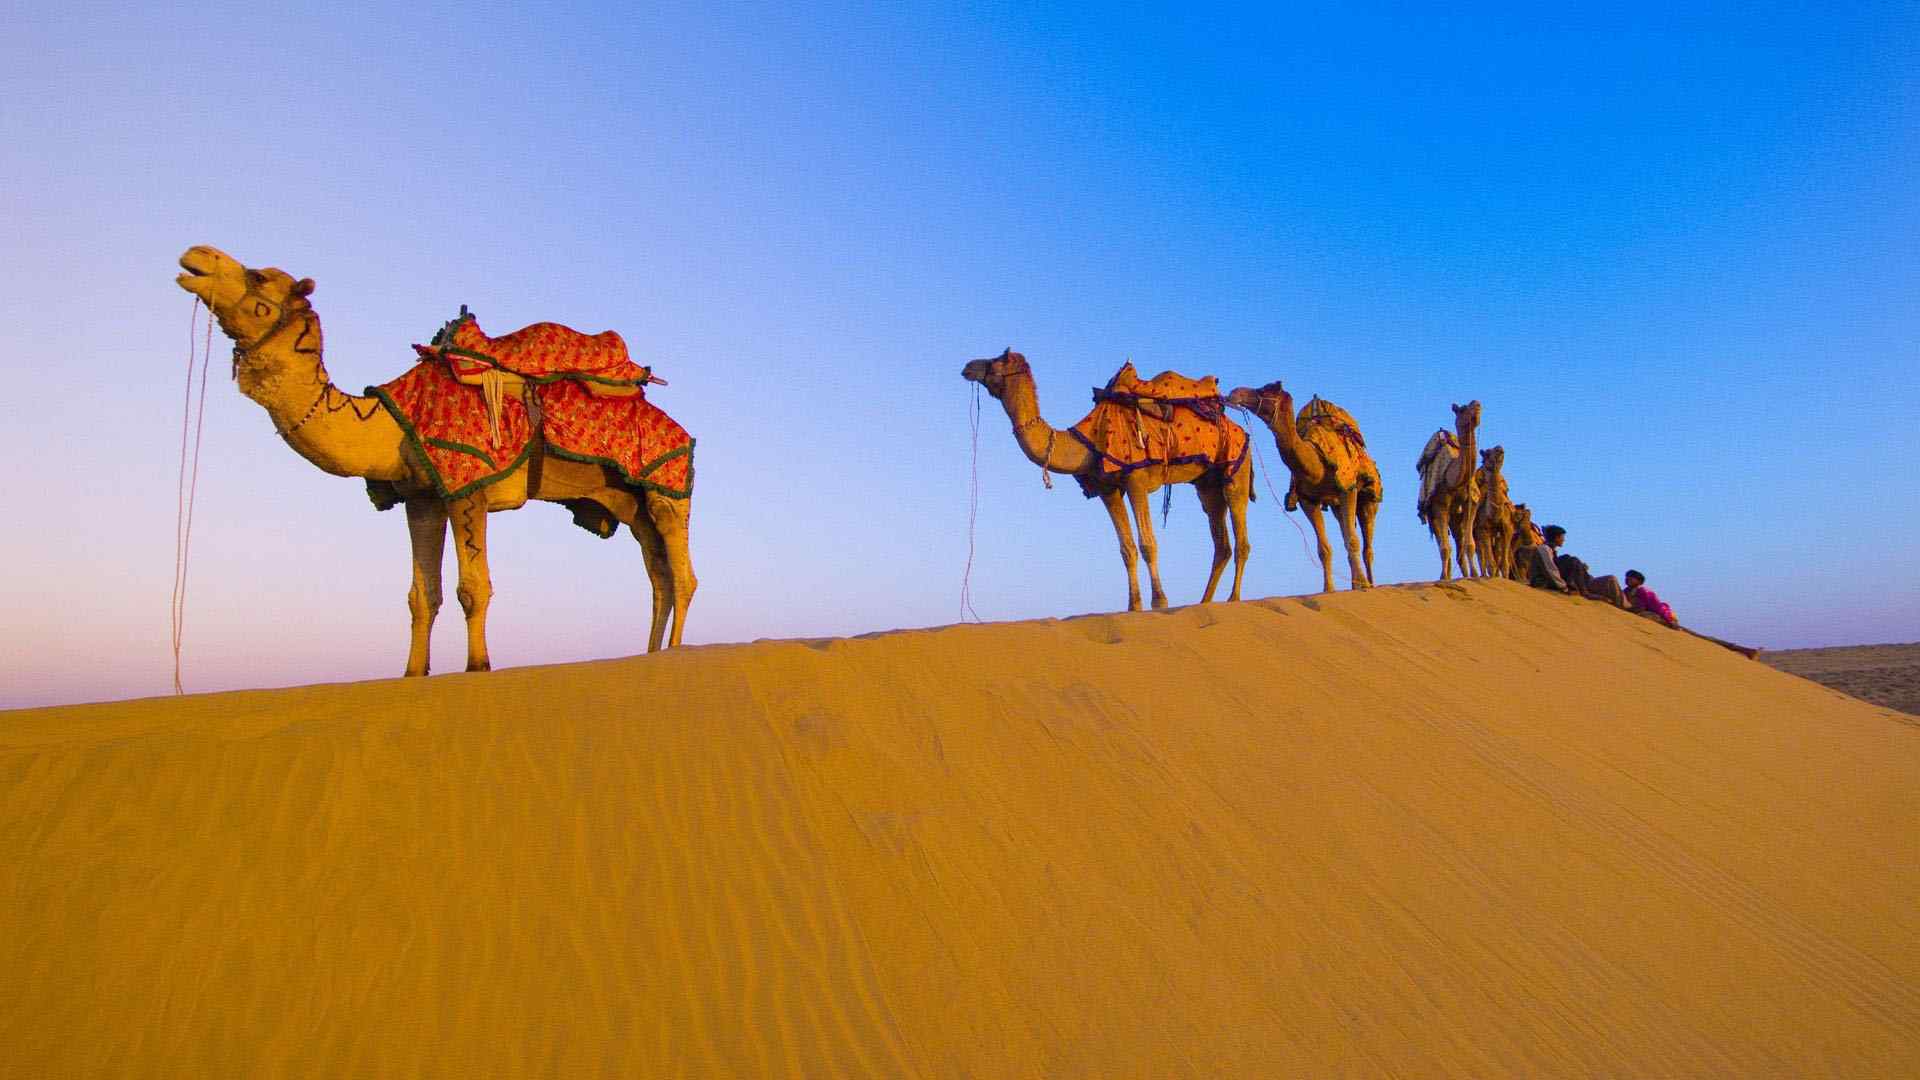 沙漠中的骆驼群特色风景图片桌面壁纸